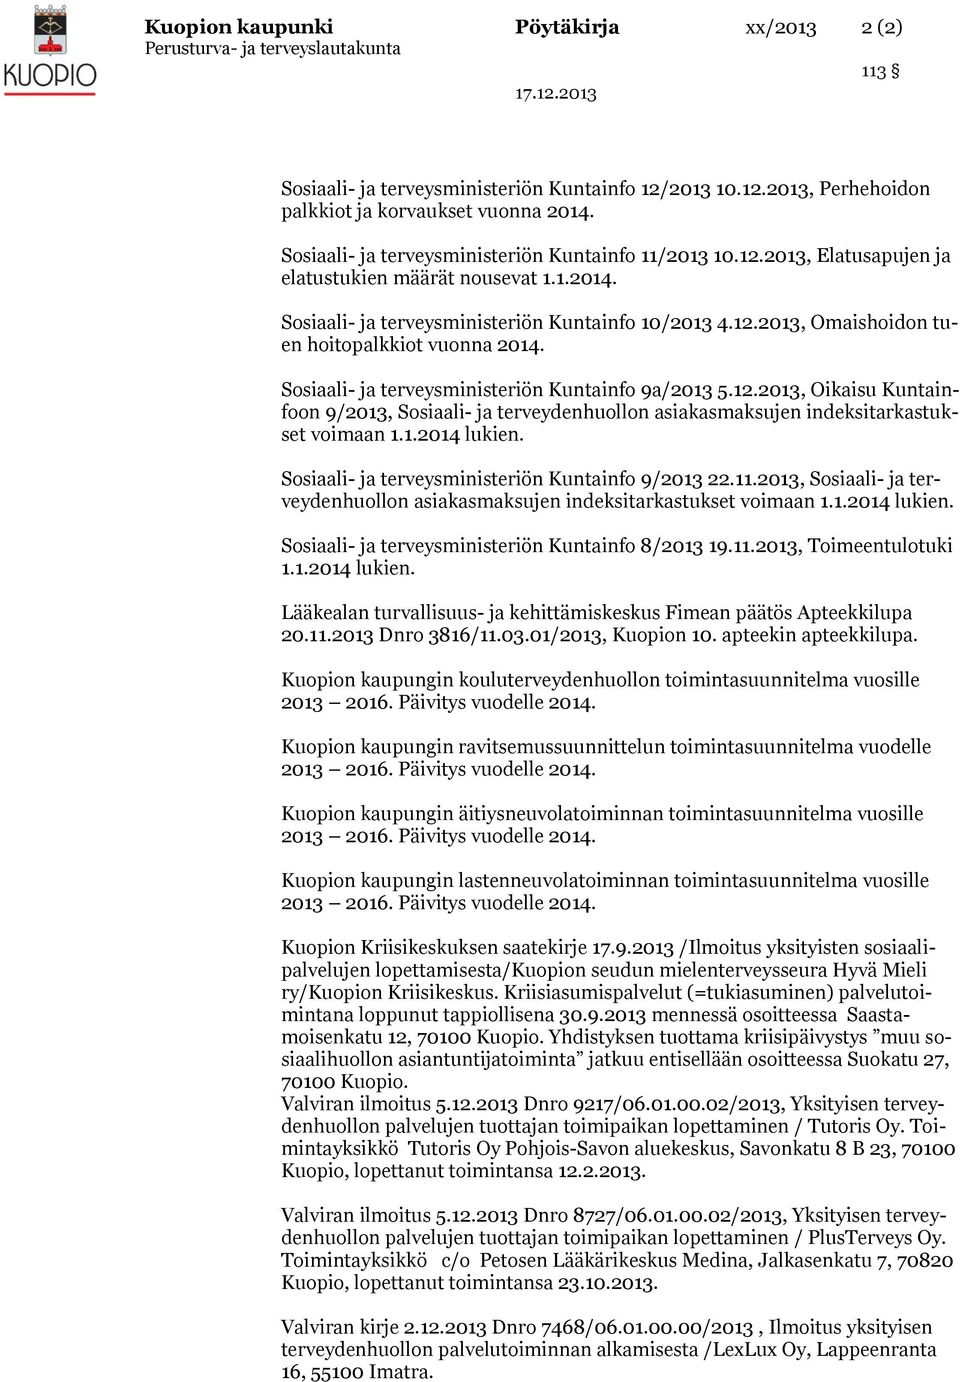 Sosiaali- ja terveysministeriön Kuntainfo 9a/2013 5.12.2013, Oikaisu Kuntainfoon 9/2013, Sosiaali- ja terveydenhuollon asiakasmaksujen indeksitarkastukset voimaan 1.1.2014 lukien.